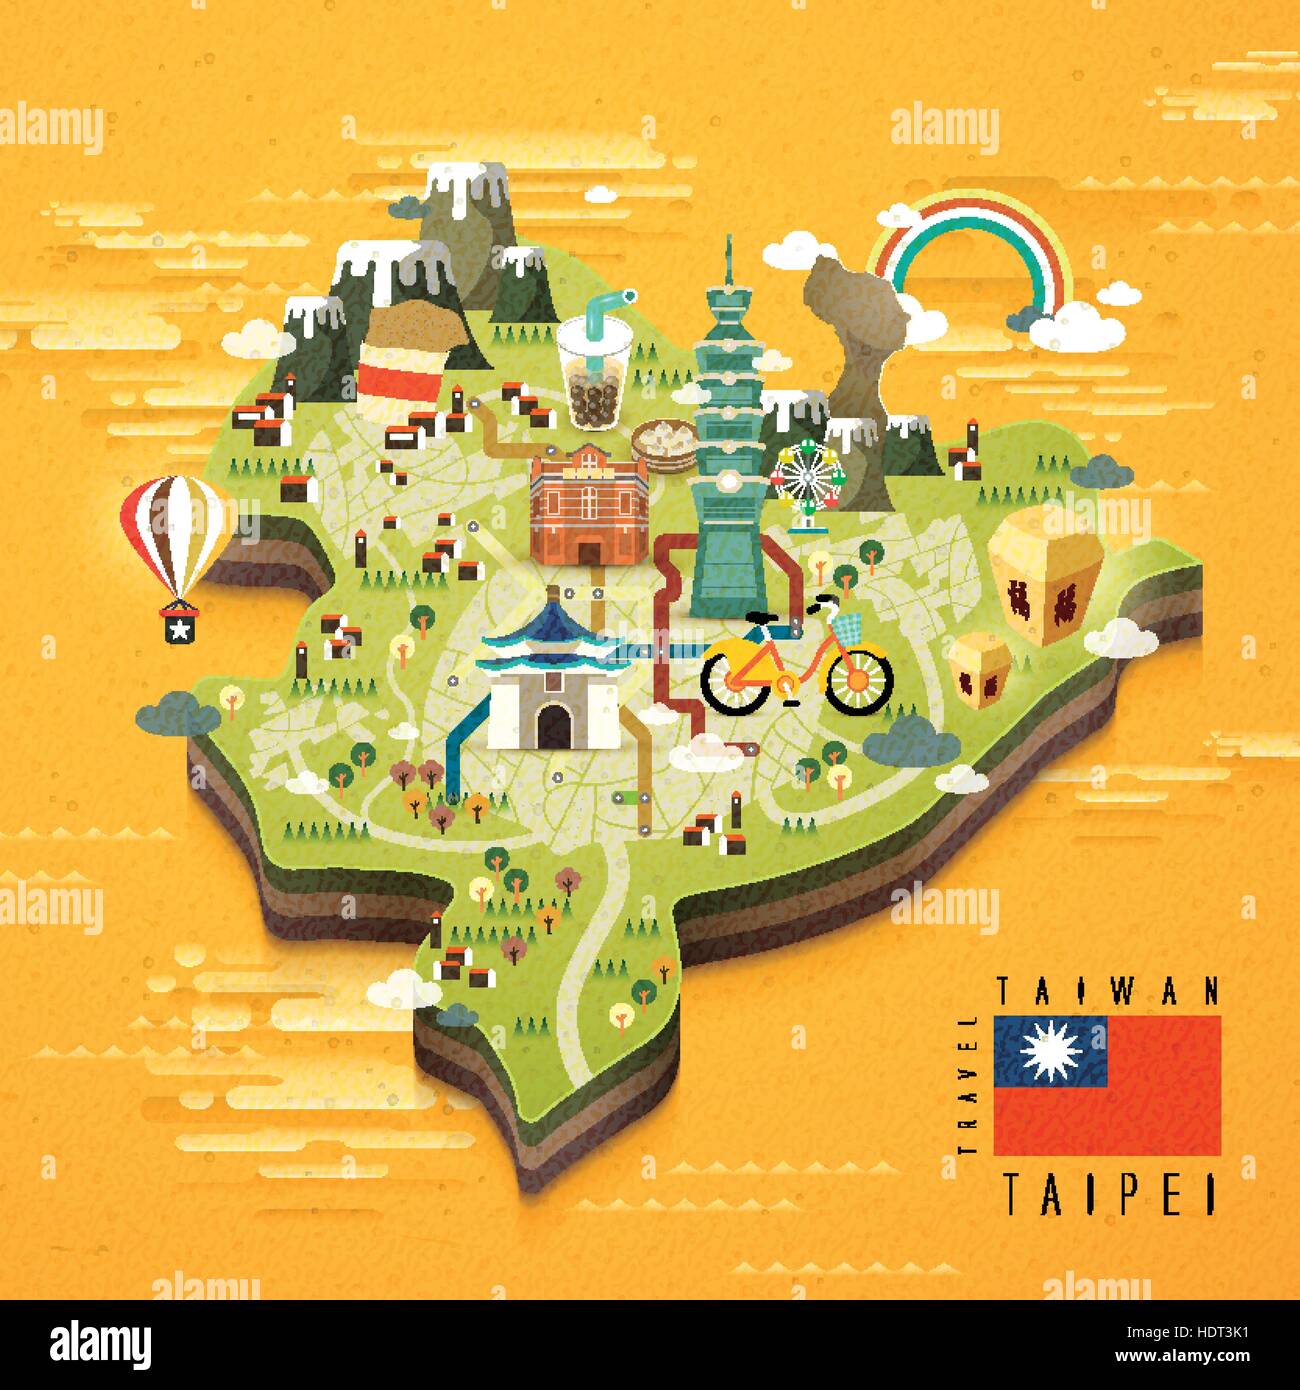 Taipei-Sehenswürdigkeiten-Reise-Karte im flat design Stock Vektor